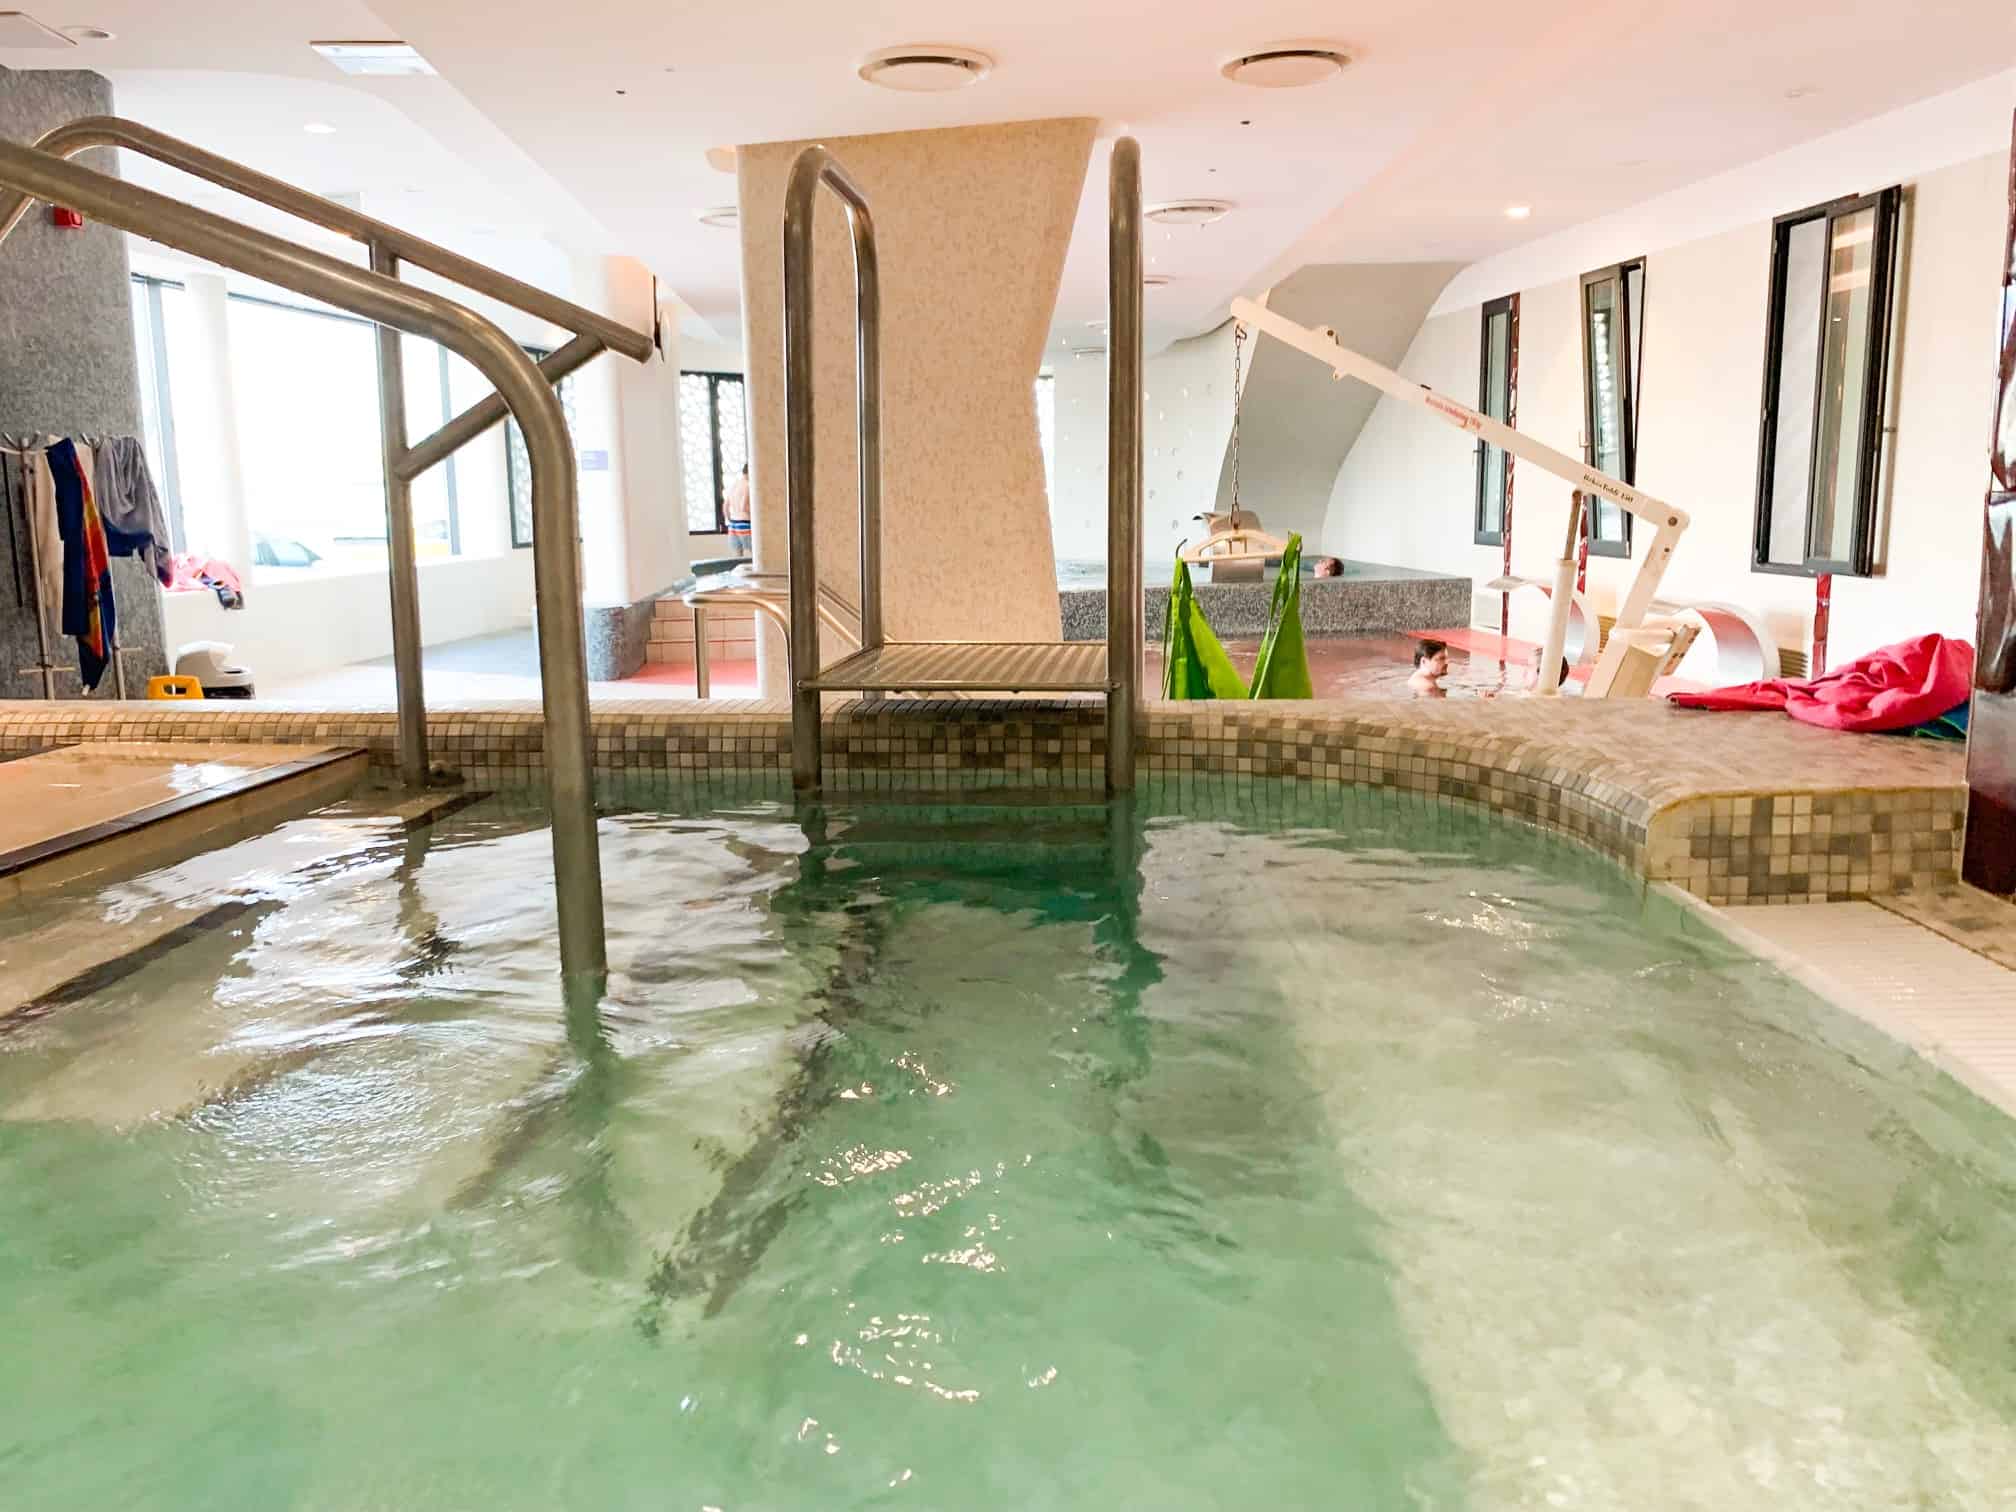 Rudas baths hottest pool